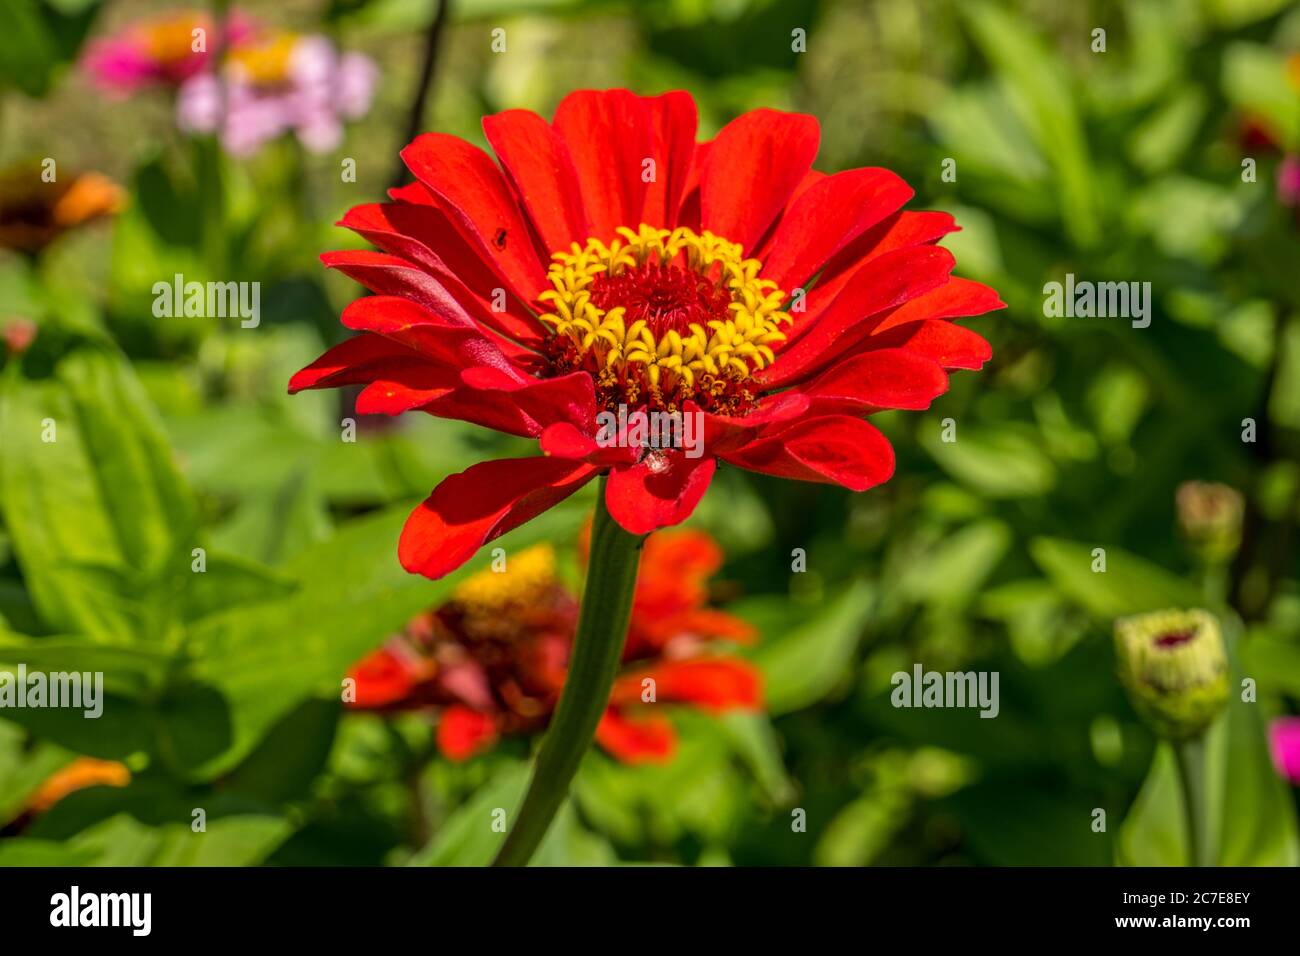 Primo piano di un fiore di zinnia rosso brillante e vivace, completamente aperto, con altre fioriture sullo sfondo in una giornata soleggiata in estate Foto Stock